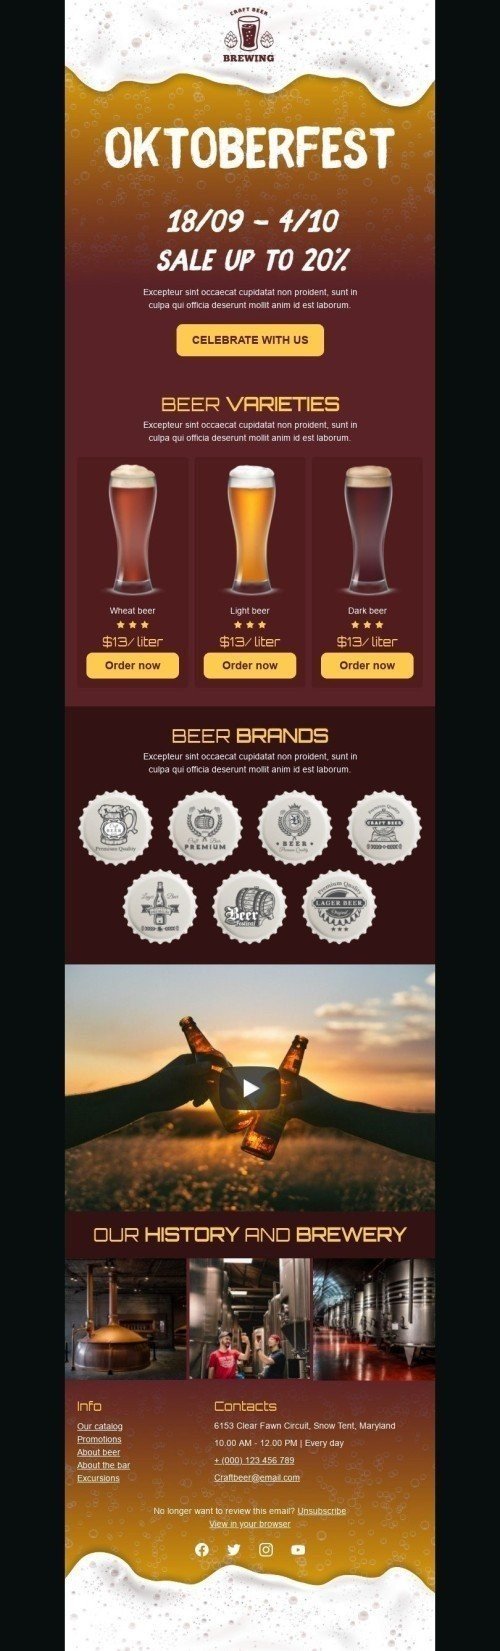 Plantilla de correo electrónico «Cerveza artesanal» de Oktoberfest para la industria de Bebidas Vista de escritorio